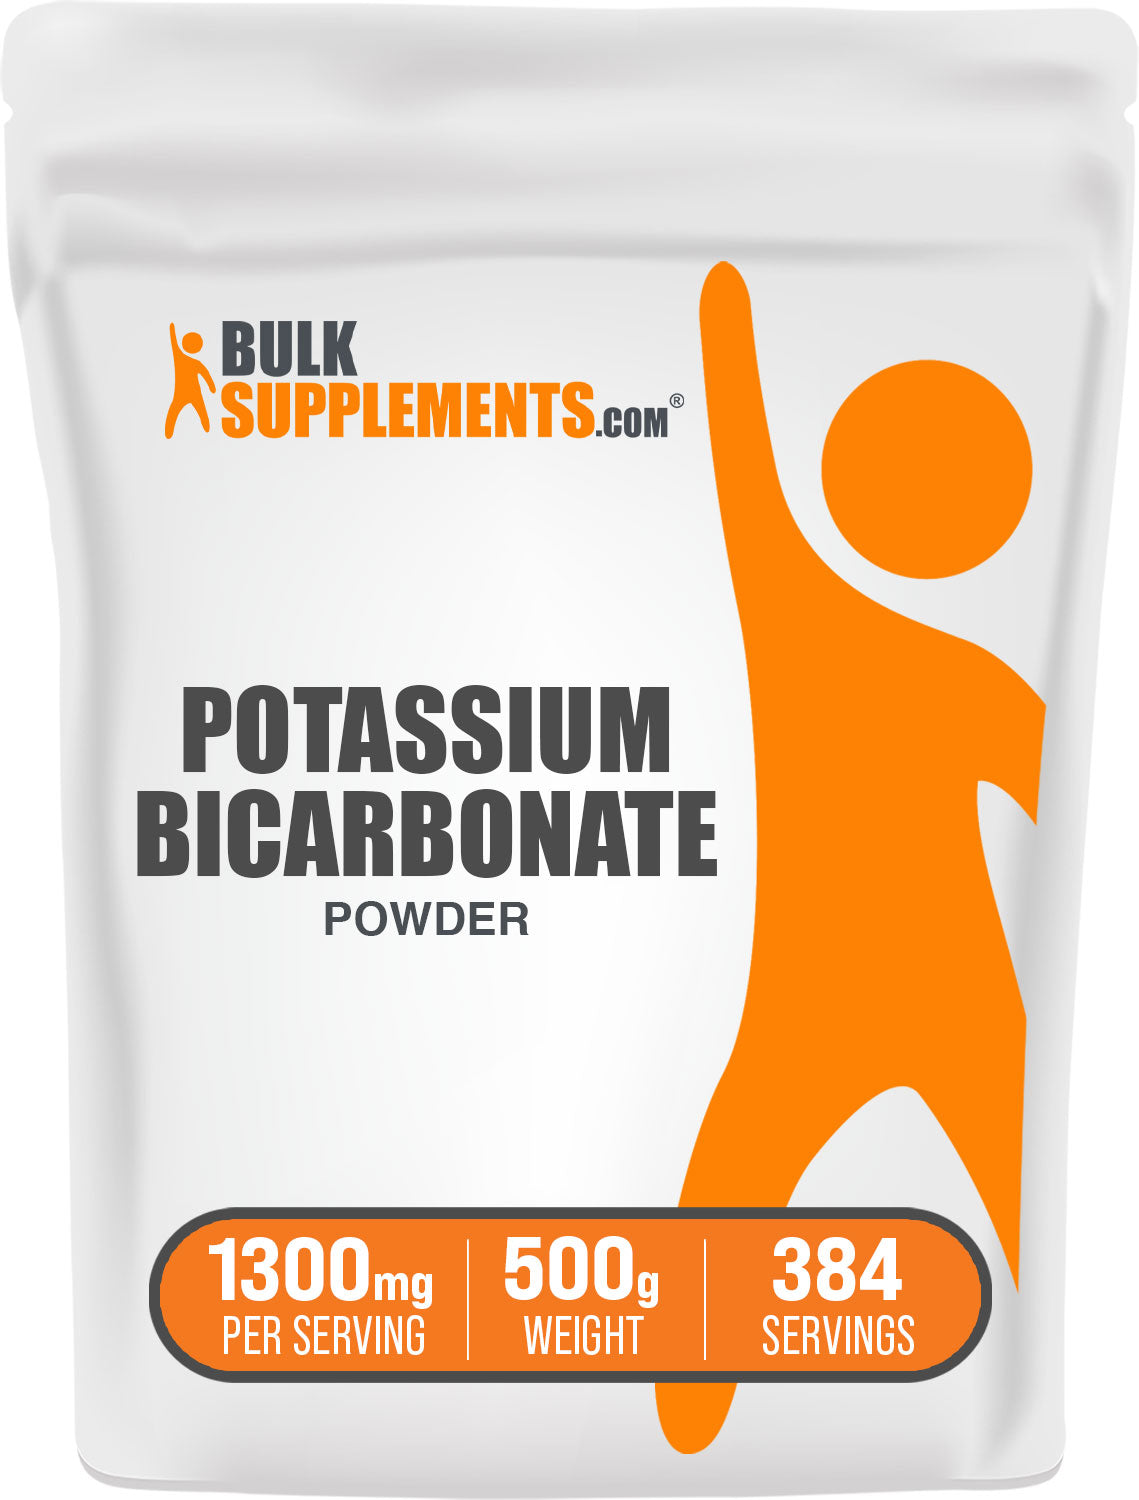 BulkSupplements.com Potassium Bicarbonate Powder 500g bag